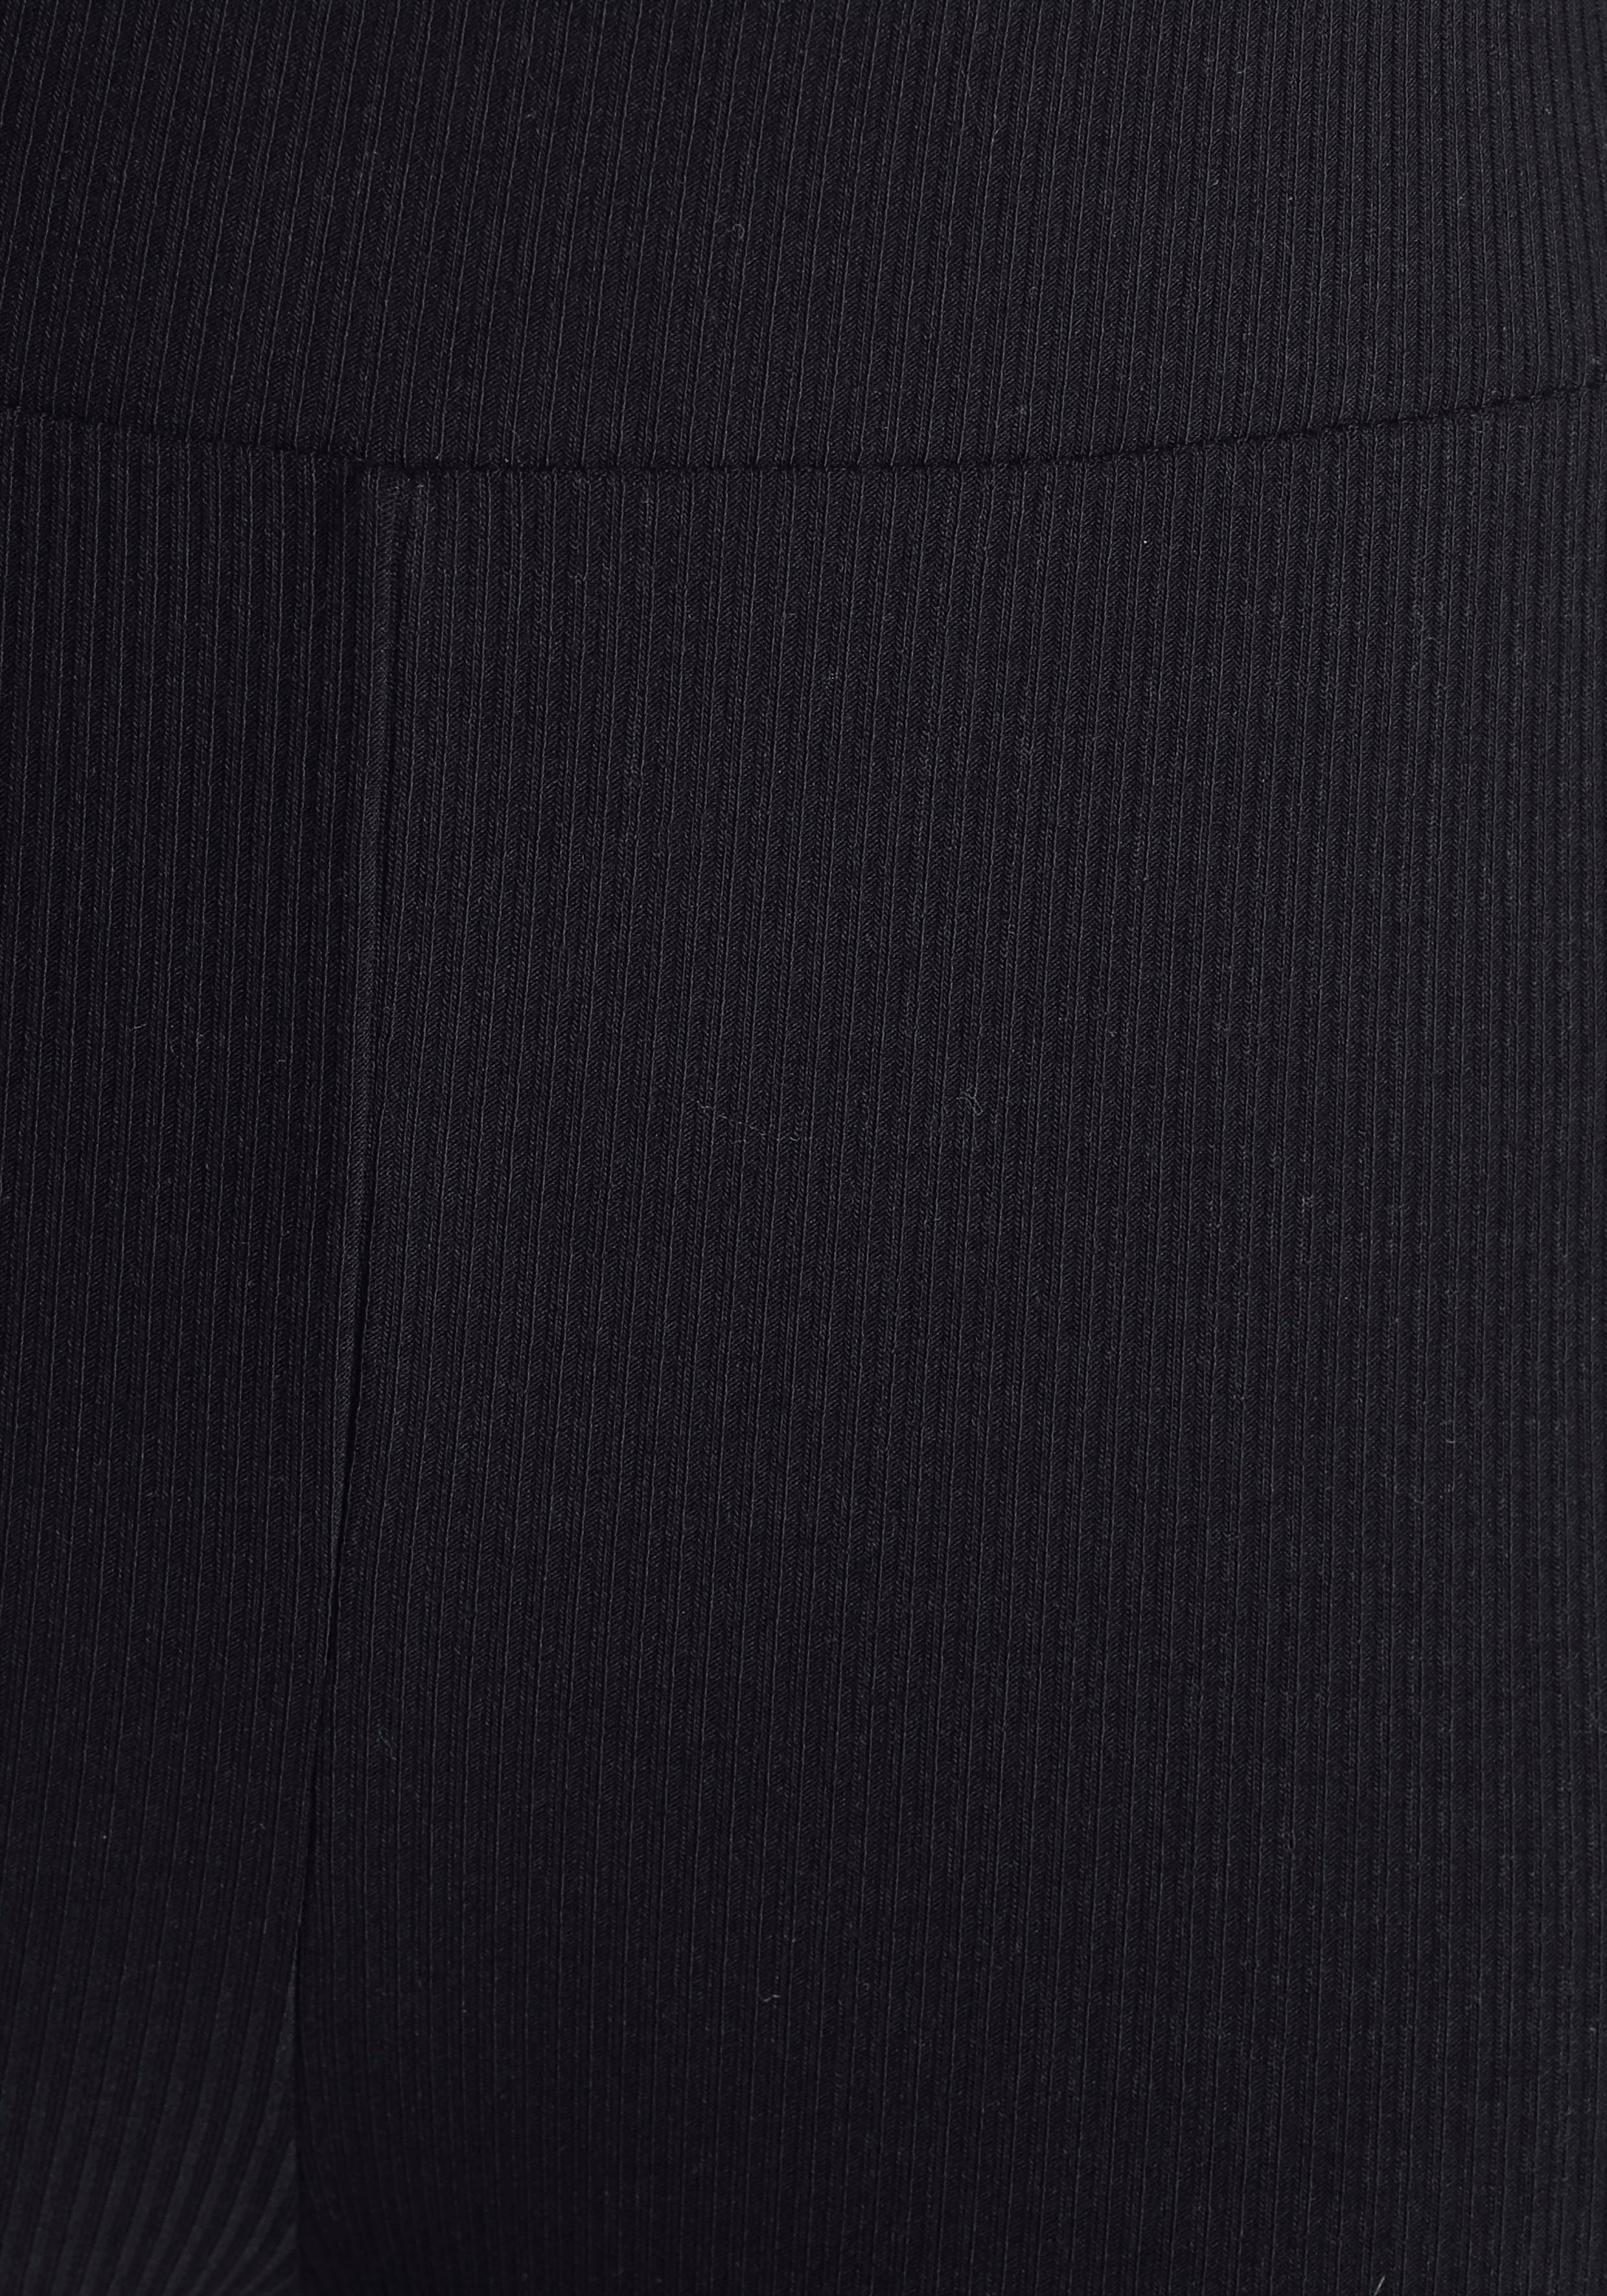 LASCANA Radlerhose mit passendem Top schwarz Homewear-Set Rippmaterial, aus